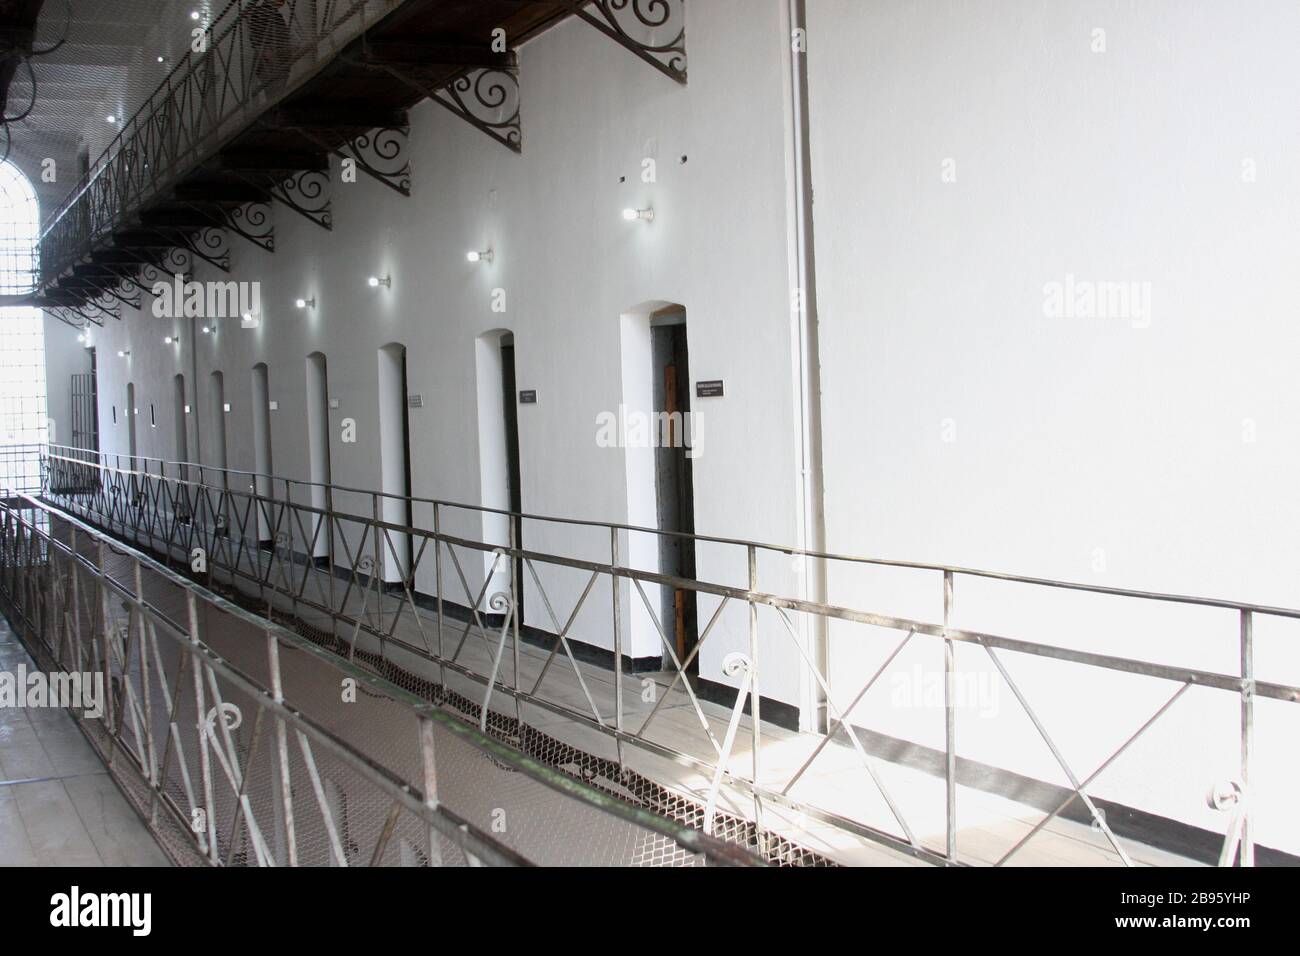 Innenansicht des Gefängnisses Sighet, ehemaliges kommunistisches politisches Gefängnis in Rumänien, heute ein Gedenkmuseum Stockfoto